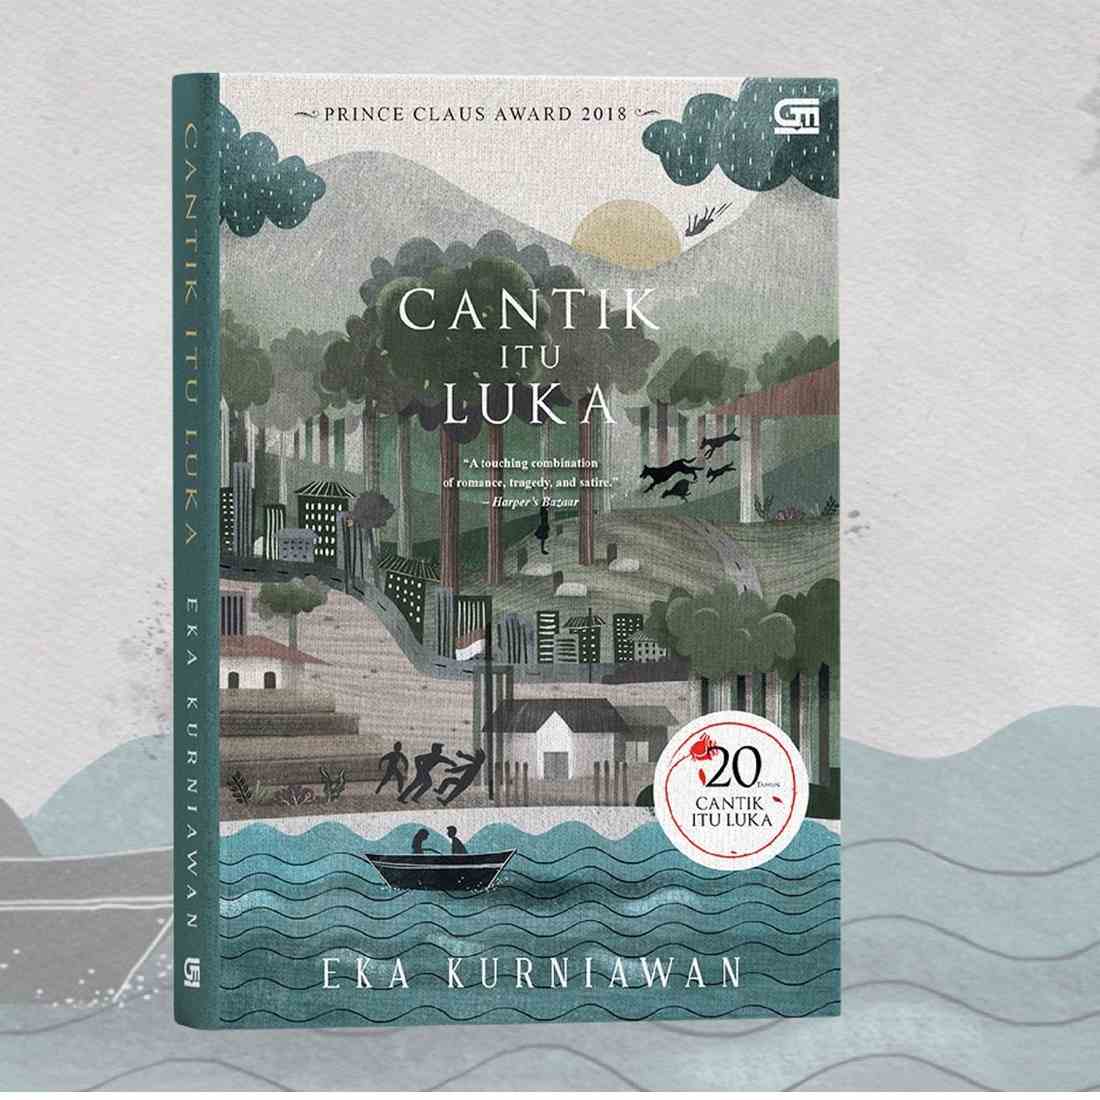 Ringkasan Cerita Novel Cantik Itu Luka dari Eka Kurniawan, Lengkap Amanat Cerita